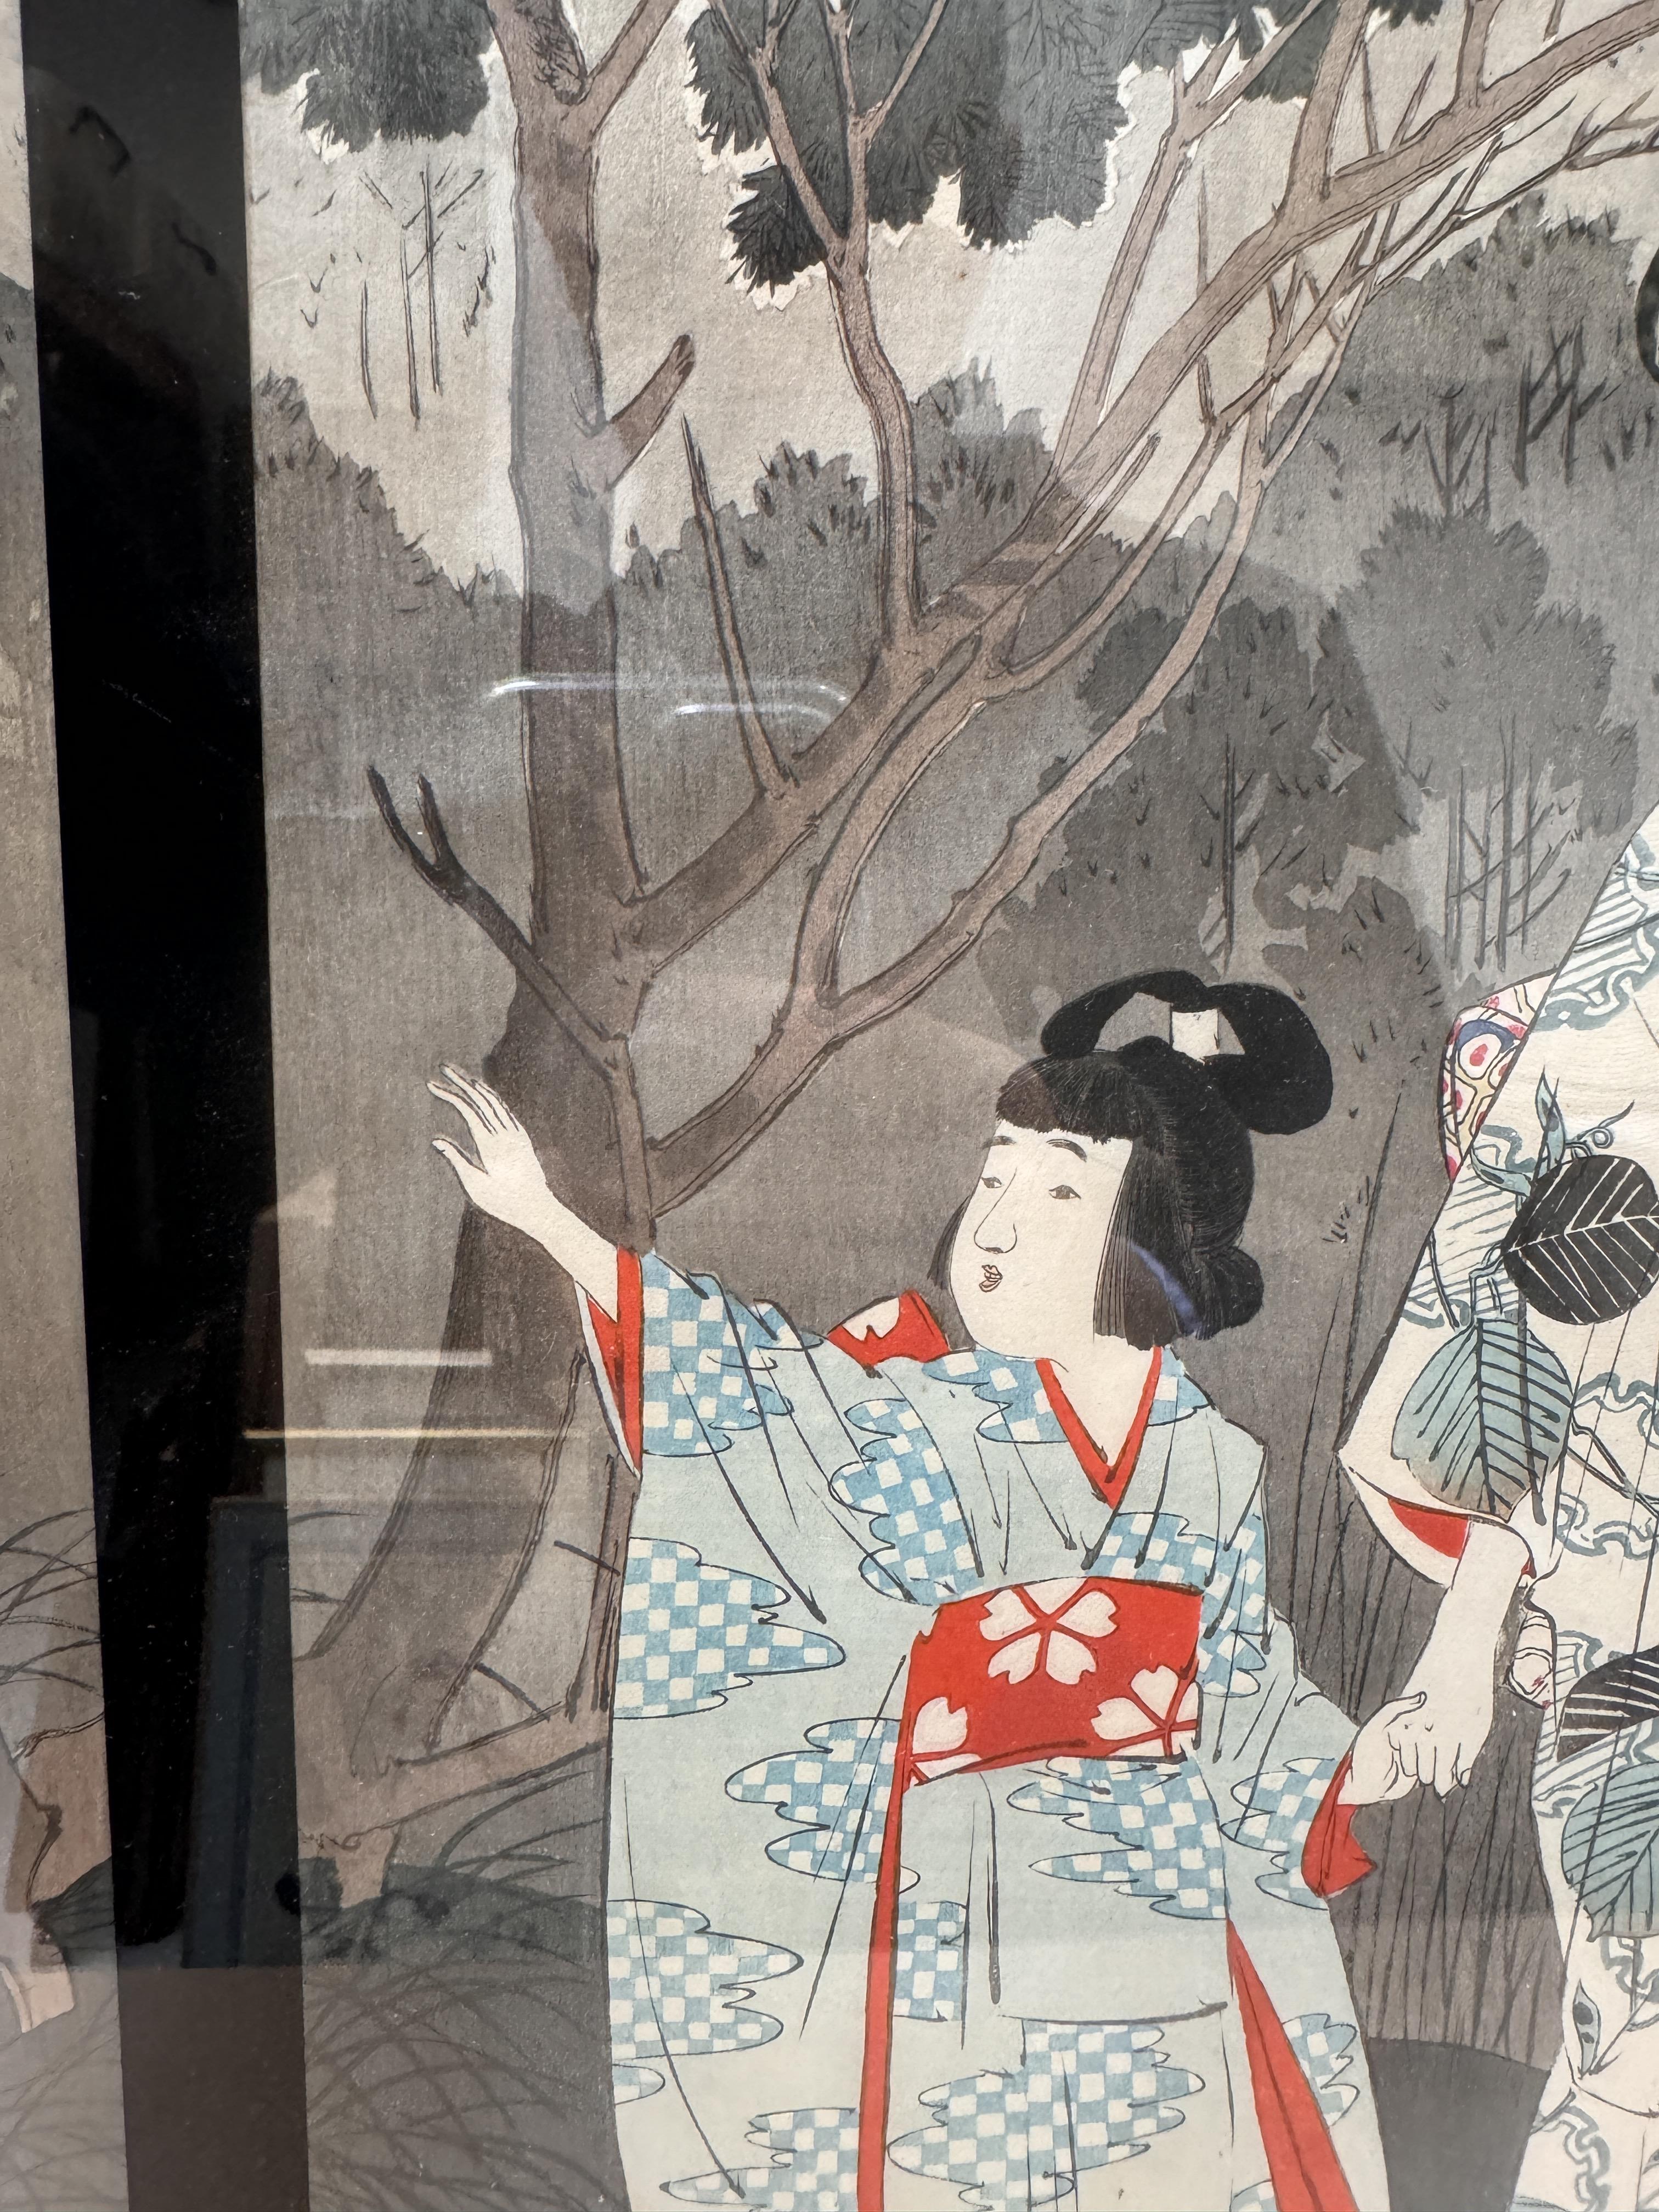 TSUKIOKA YOSHITOSHI (1797 – 1858), MIYAGAWA SHUNTEI (1873 – 1914) Two Japanese woodblock print tript - Image 22 of 23